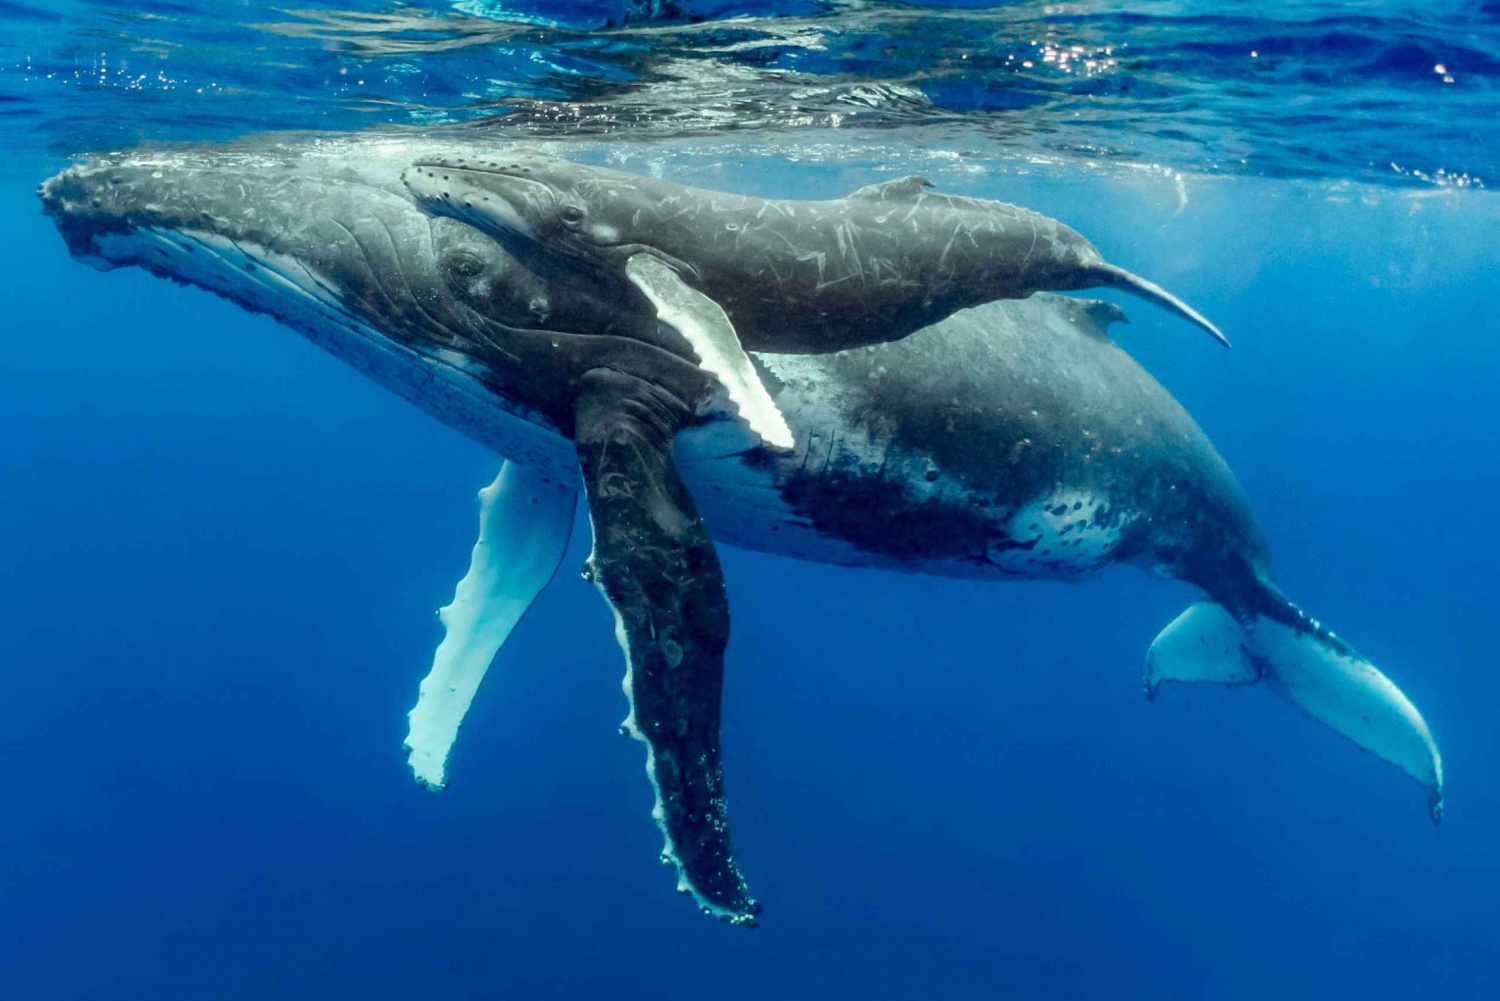 Uvita: Marino Ballena nasjonalpark - hval- og delfinsafari